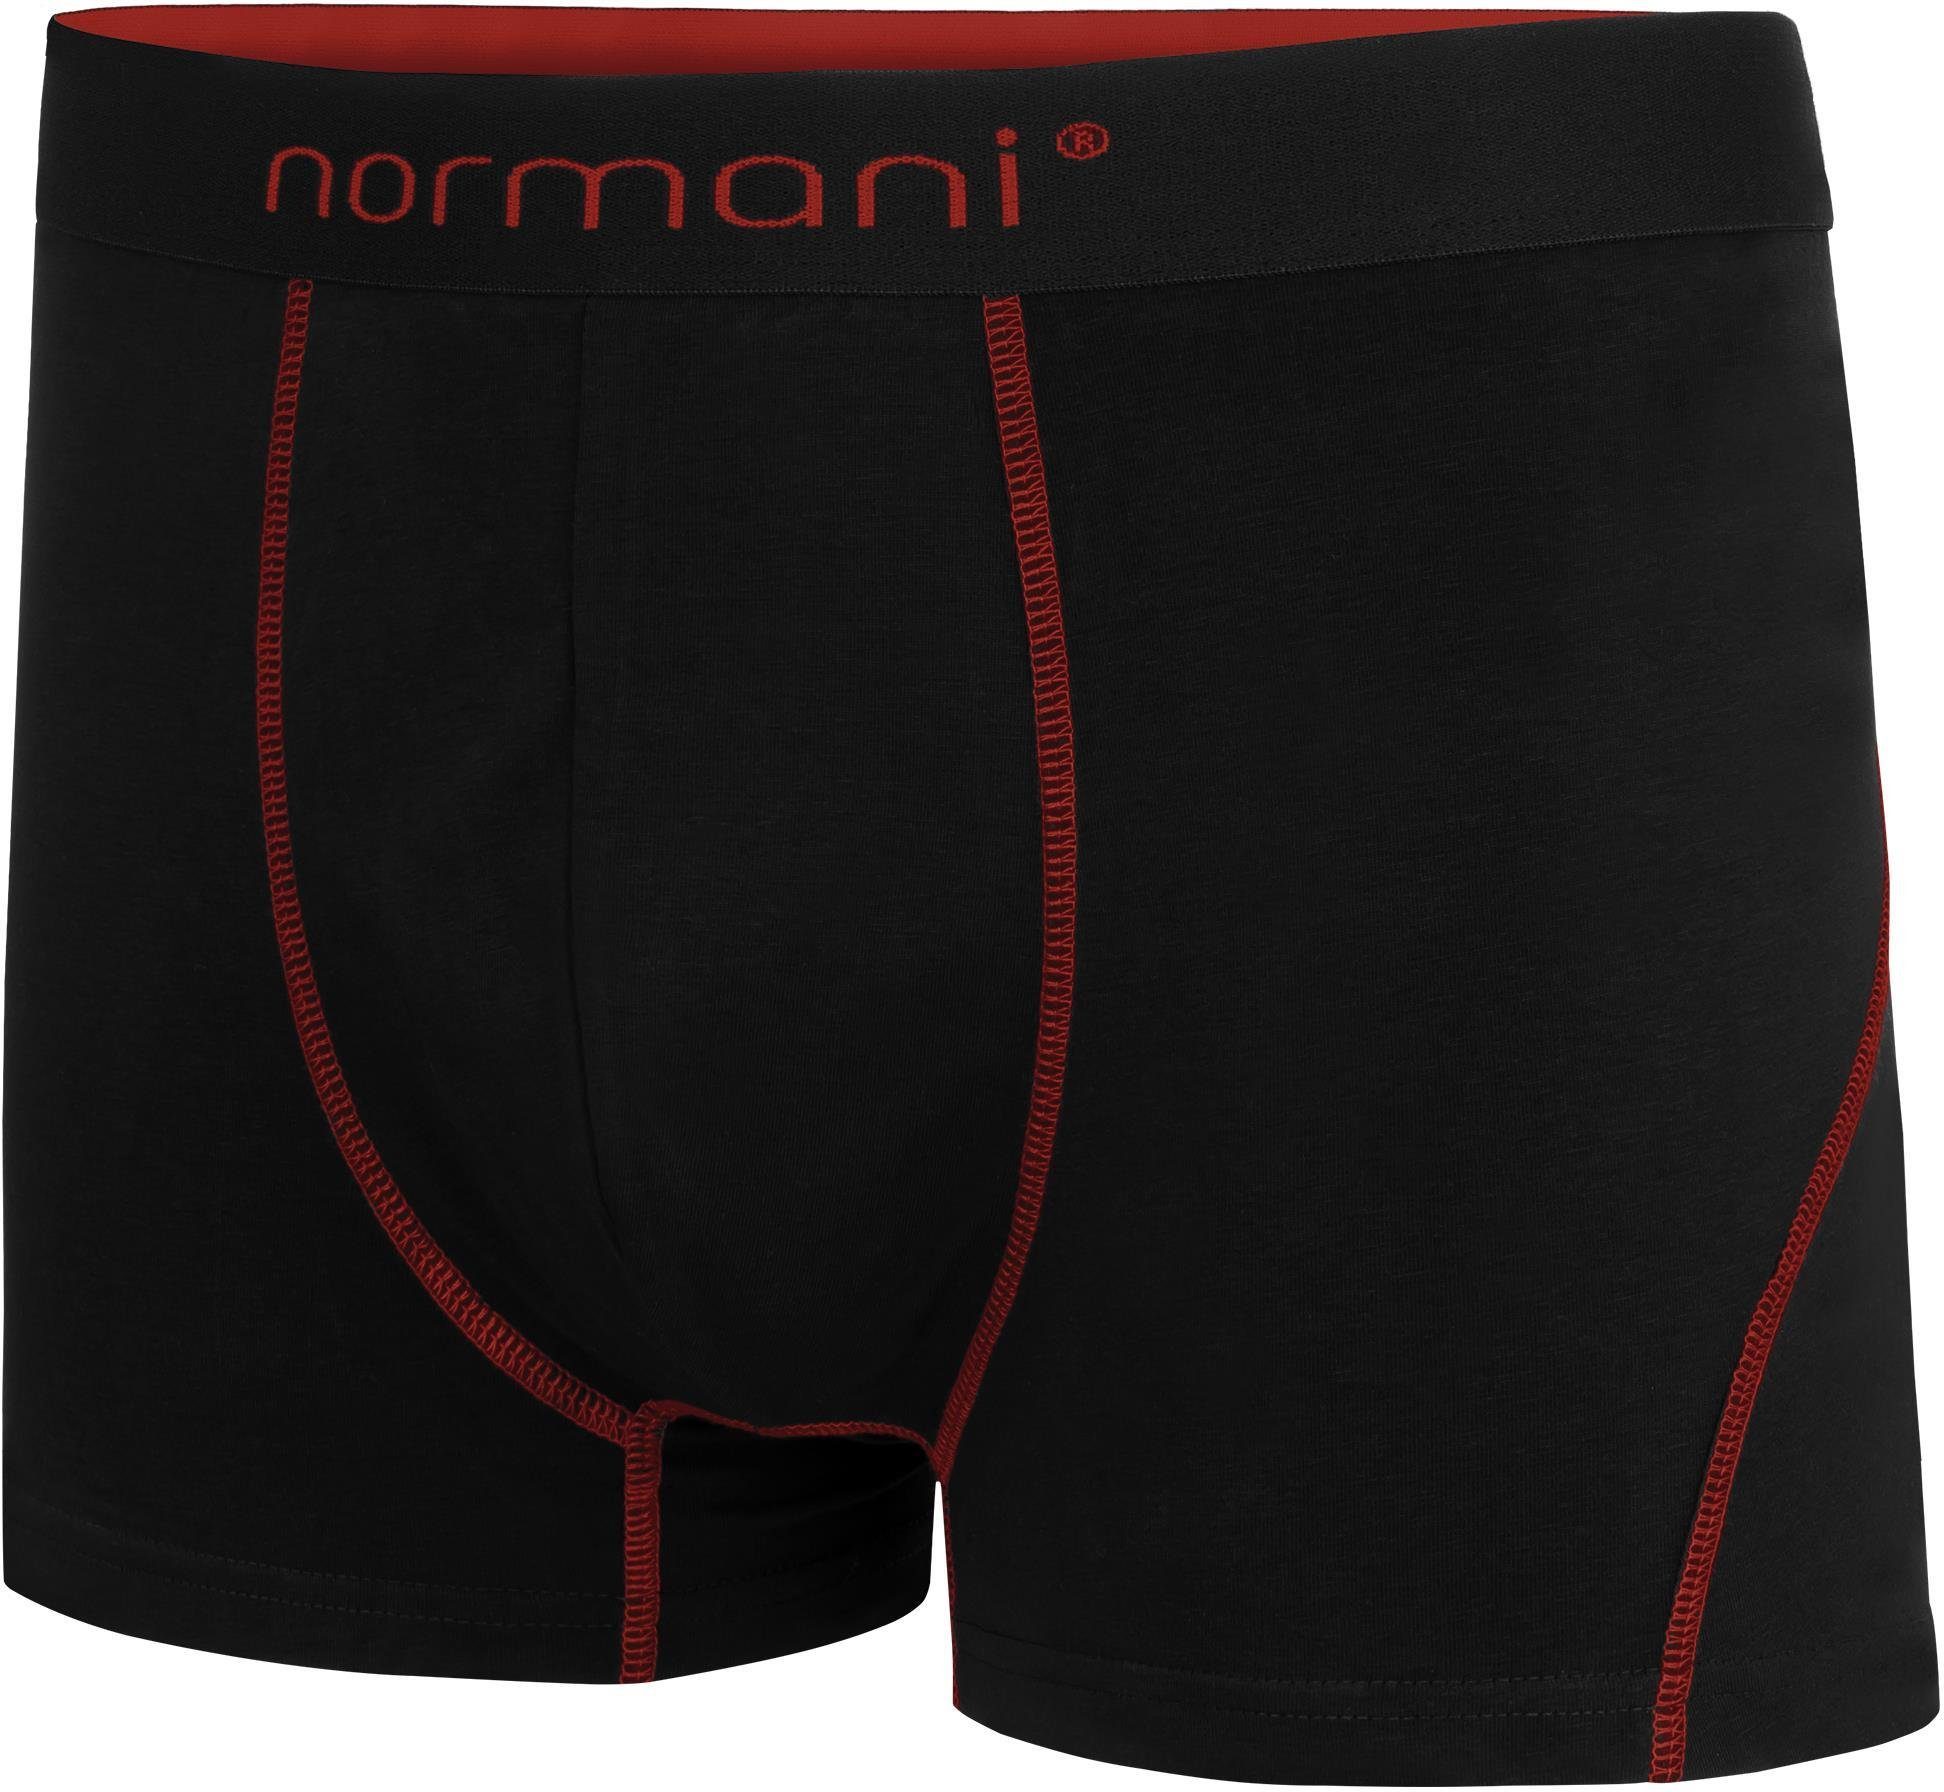 aus für Unterhose Baumwolle Herren Boxershorts 2 Stanley Boxershorts atmungsaktiver Rot Männer normani